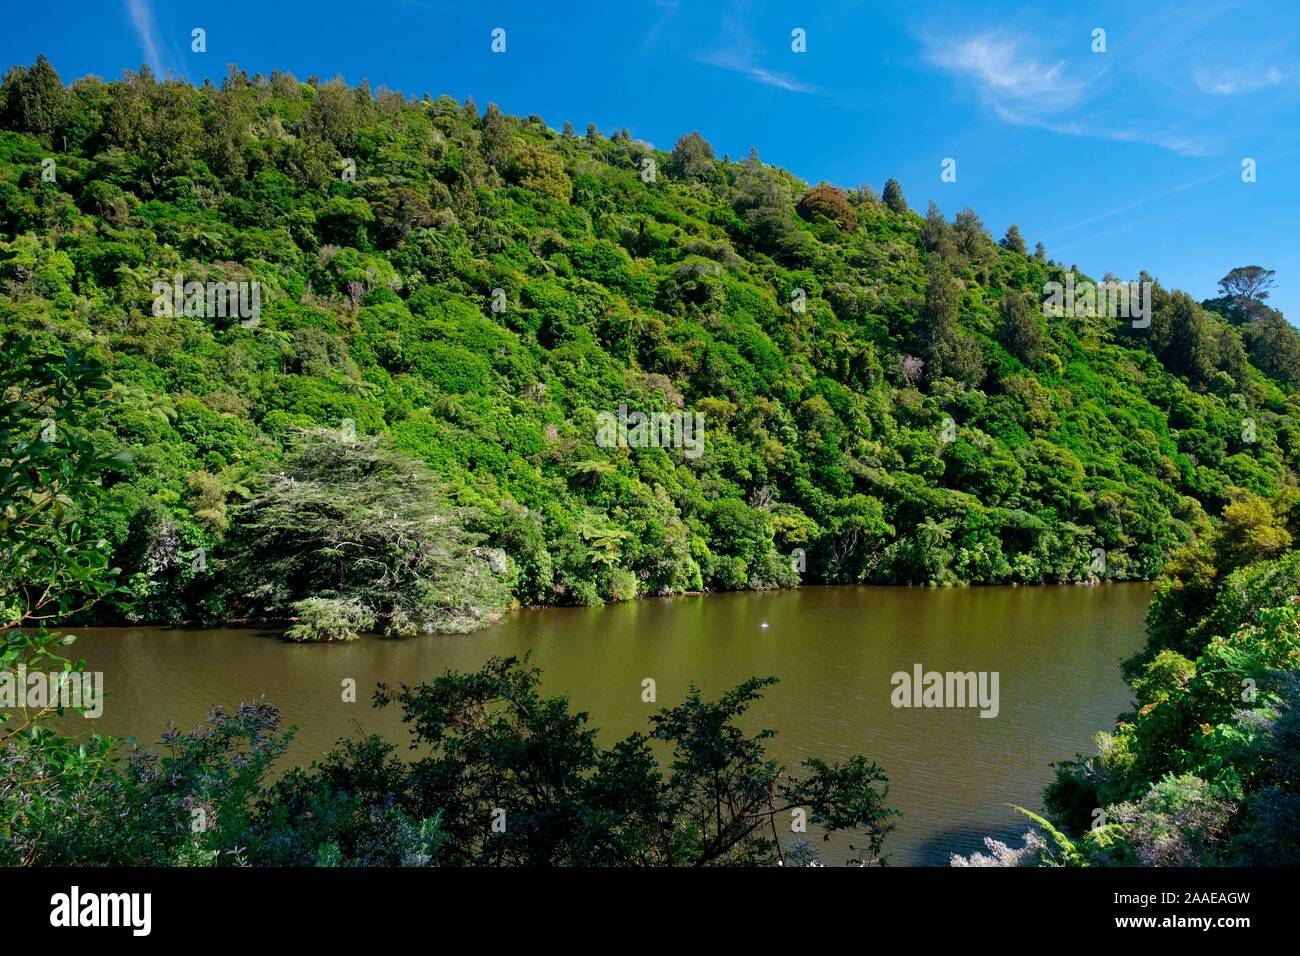 Untere Karori Reservoir in Zealandia, ein naturschutzprojekt und Attraktion ist der weltweit erste komplett eingezäunt urban Eco Heiligtum von 225 HA, Wellington, Neuseeland Stockfoto